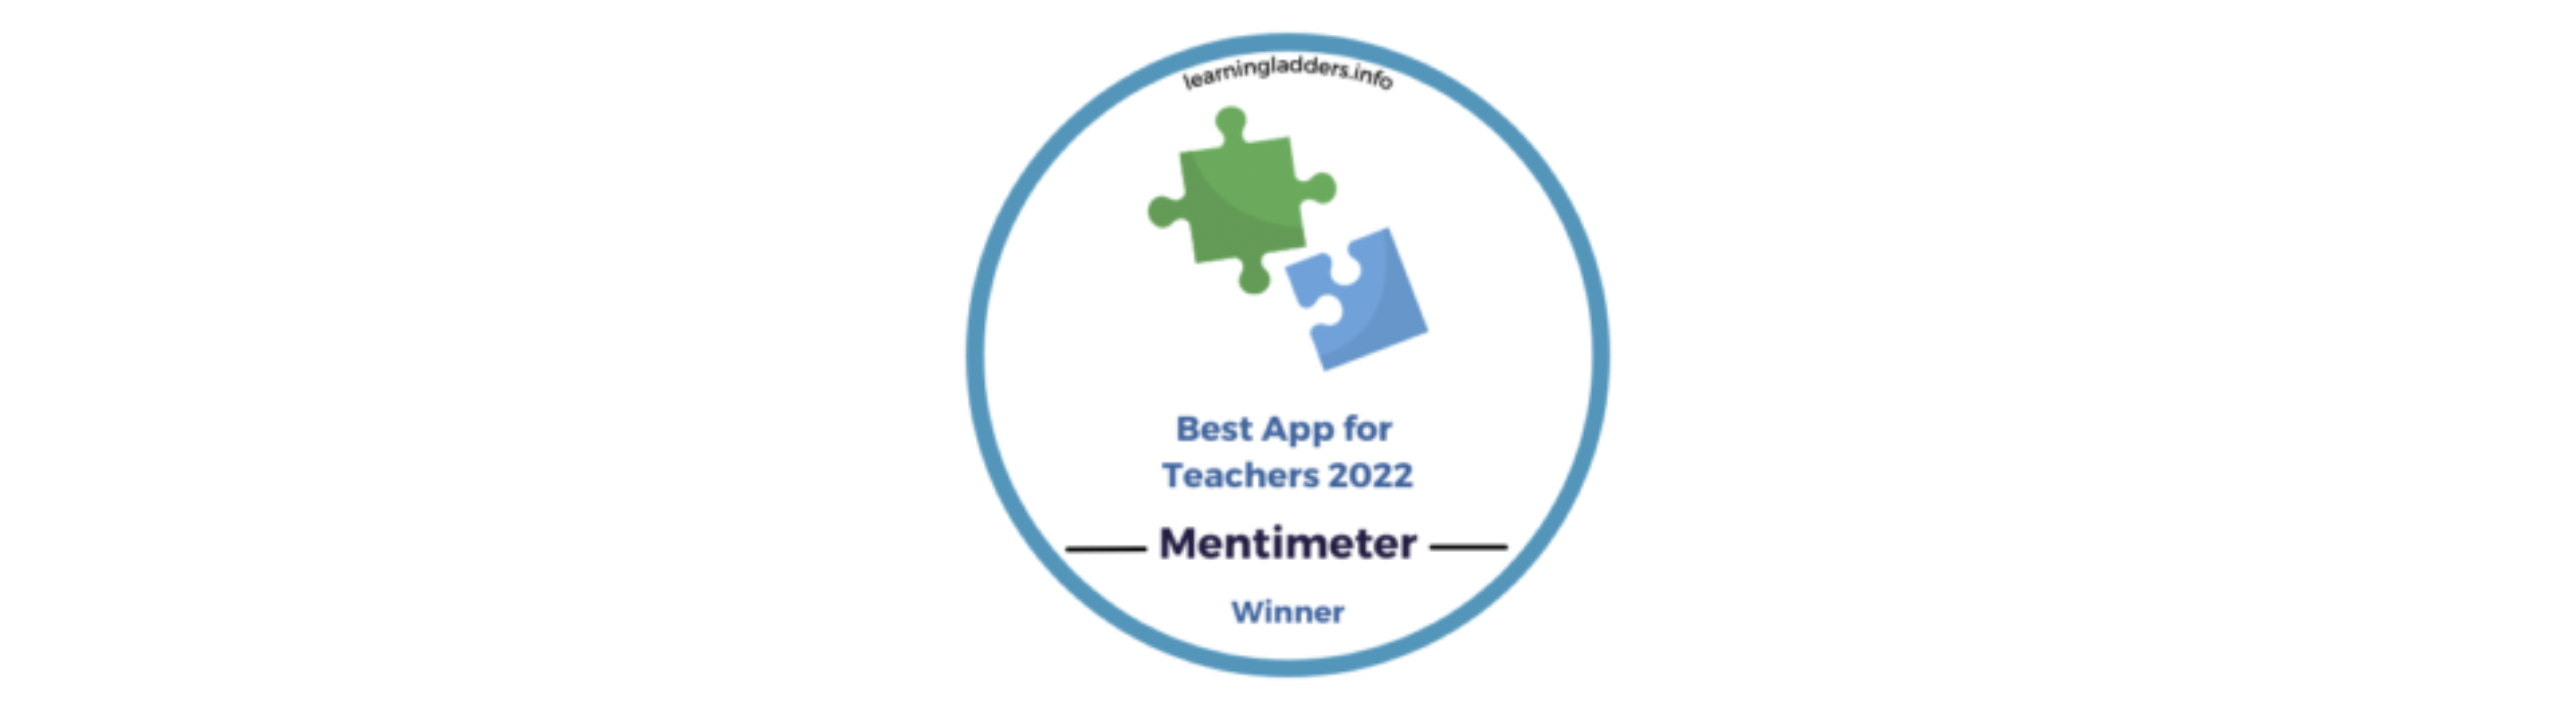 Mentimeter: Best App for Teachers 2022